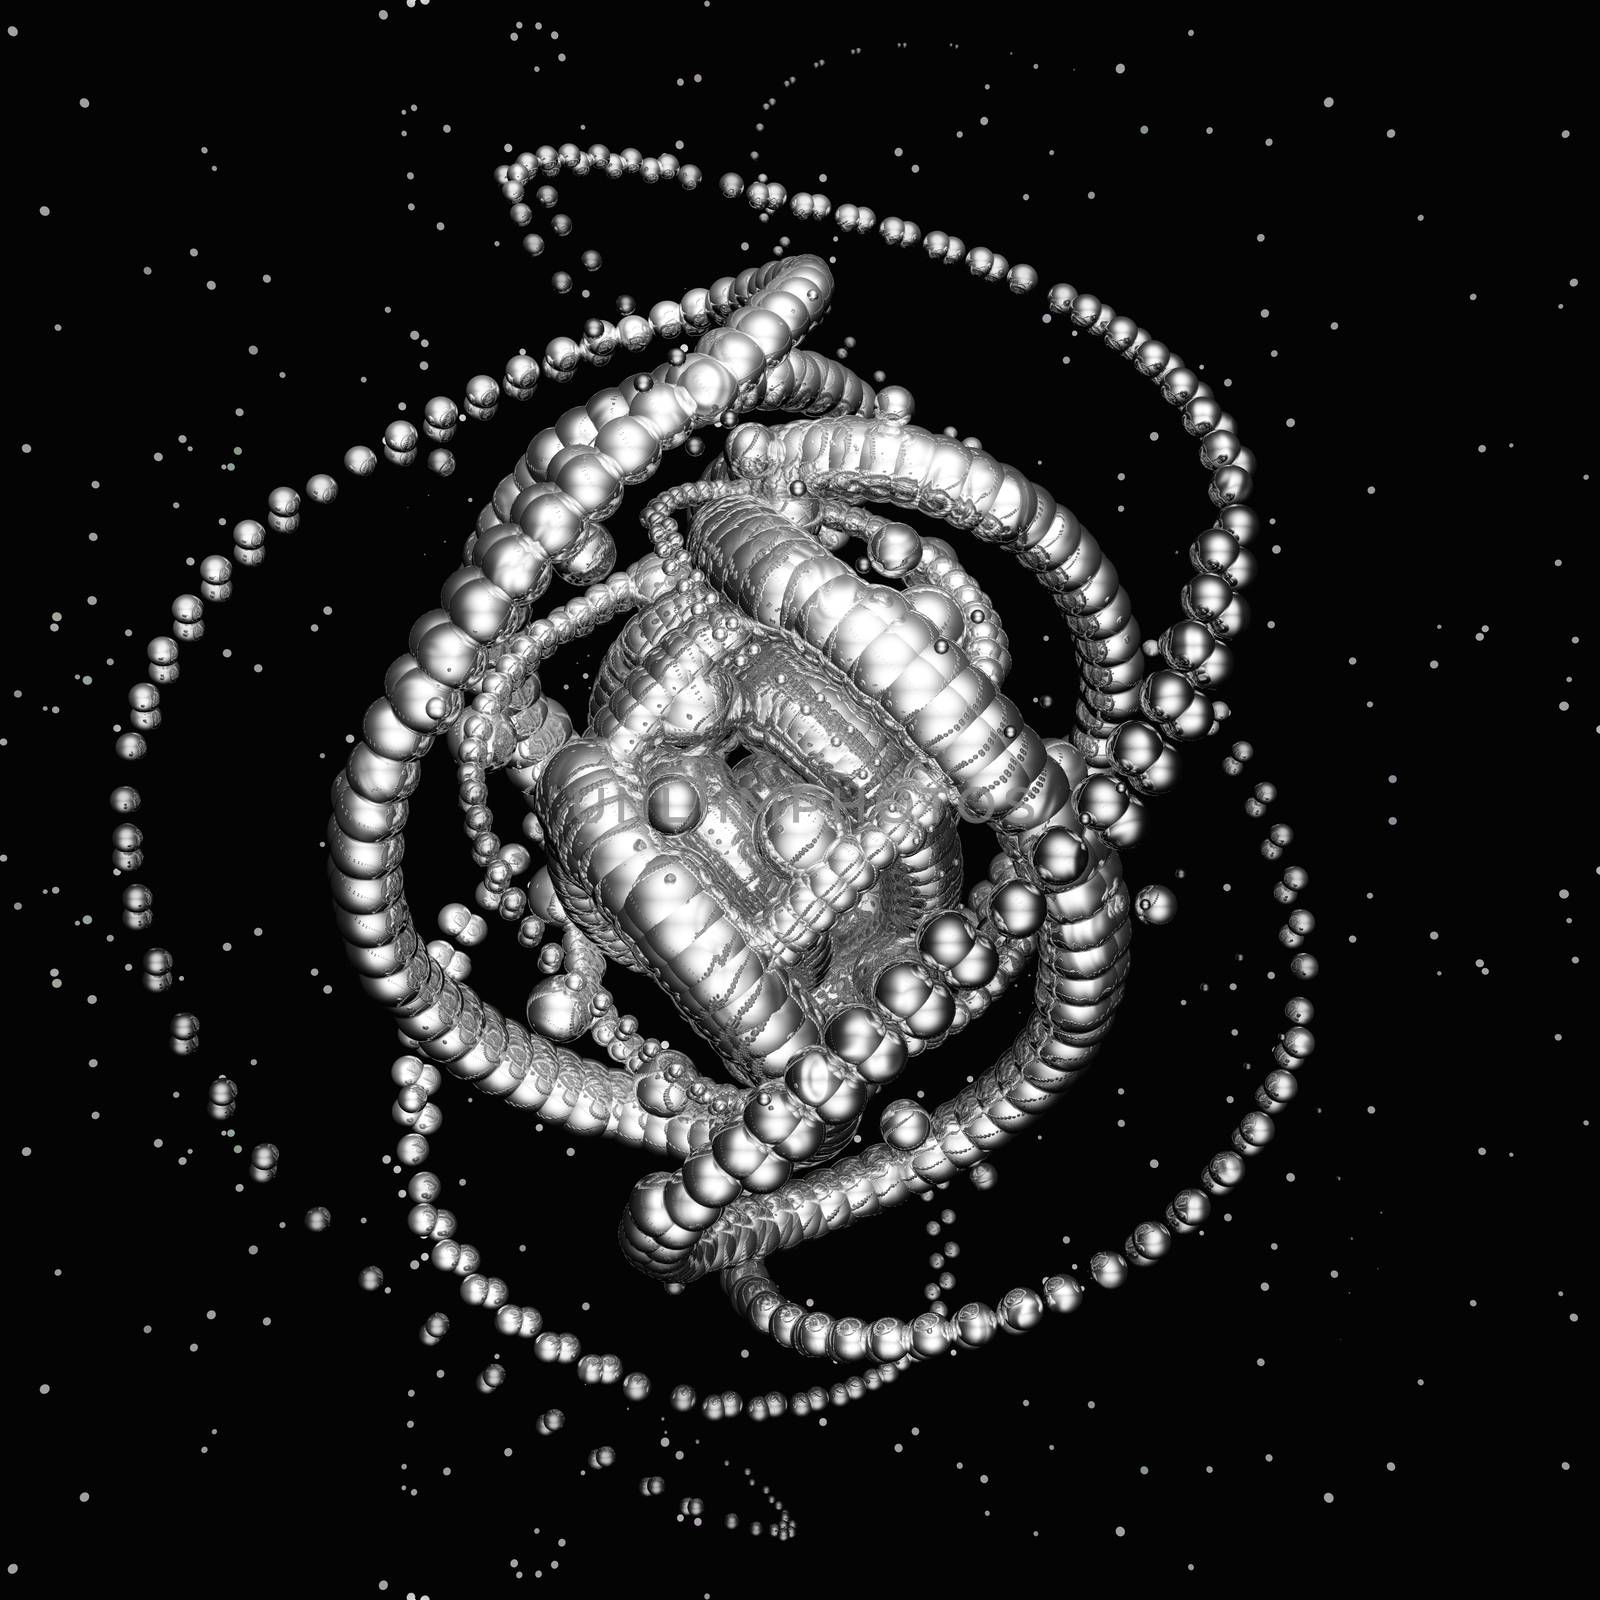 Digital Illustration of a fractal Structure